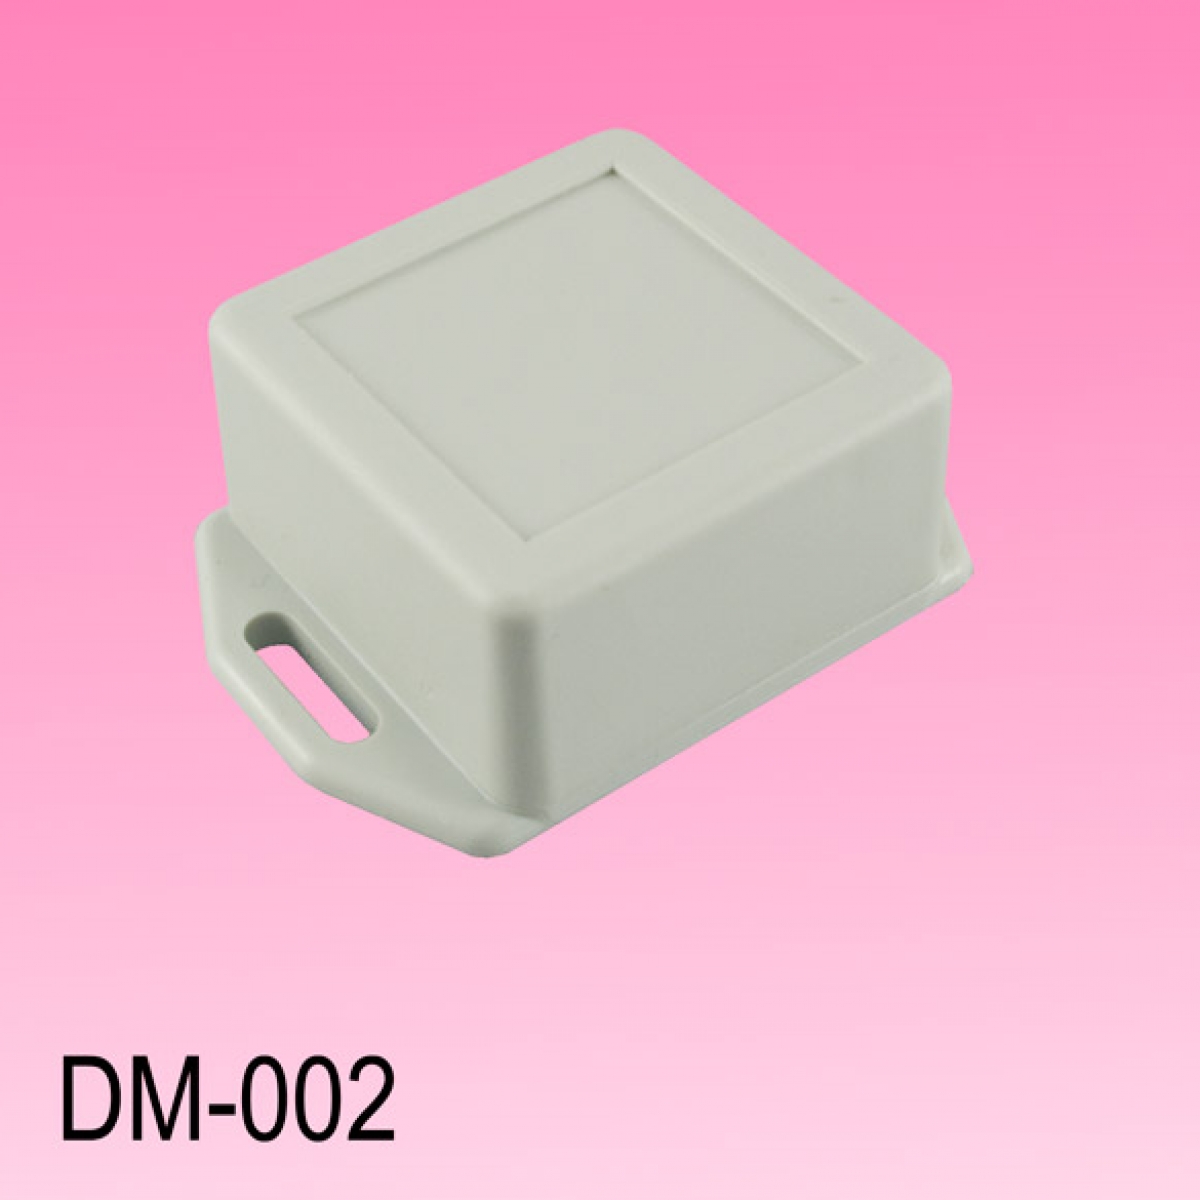 DM-002